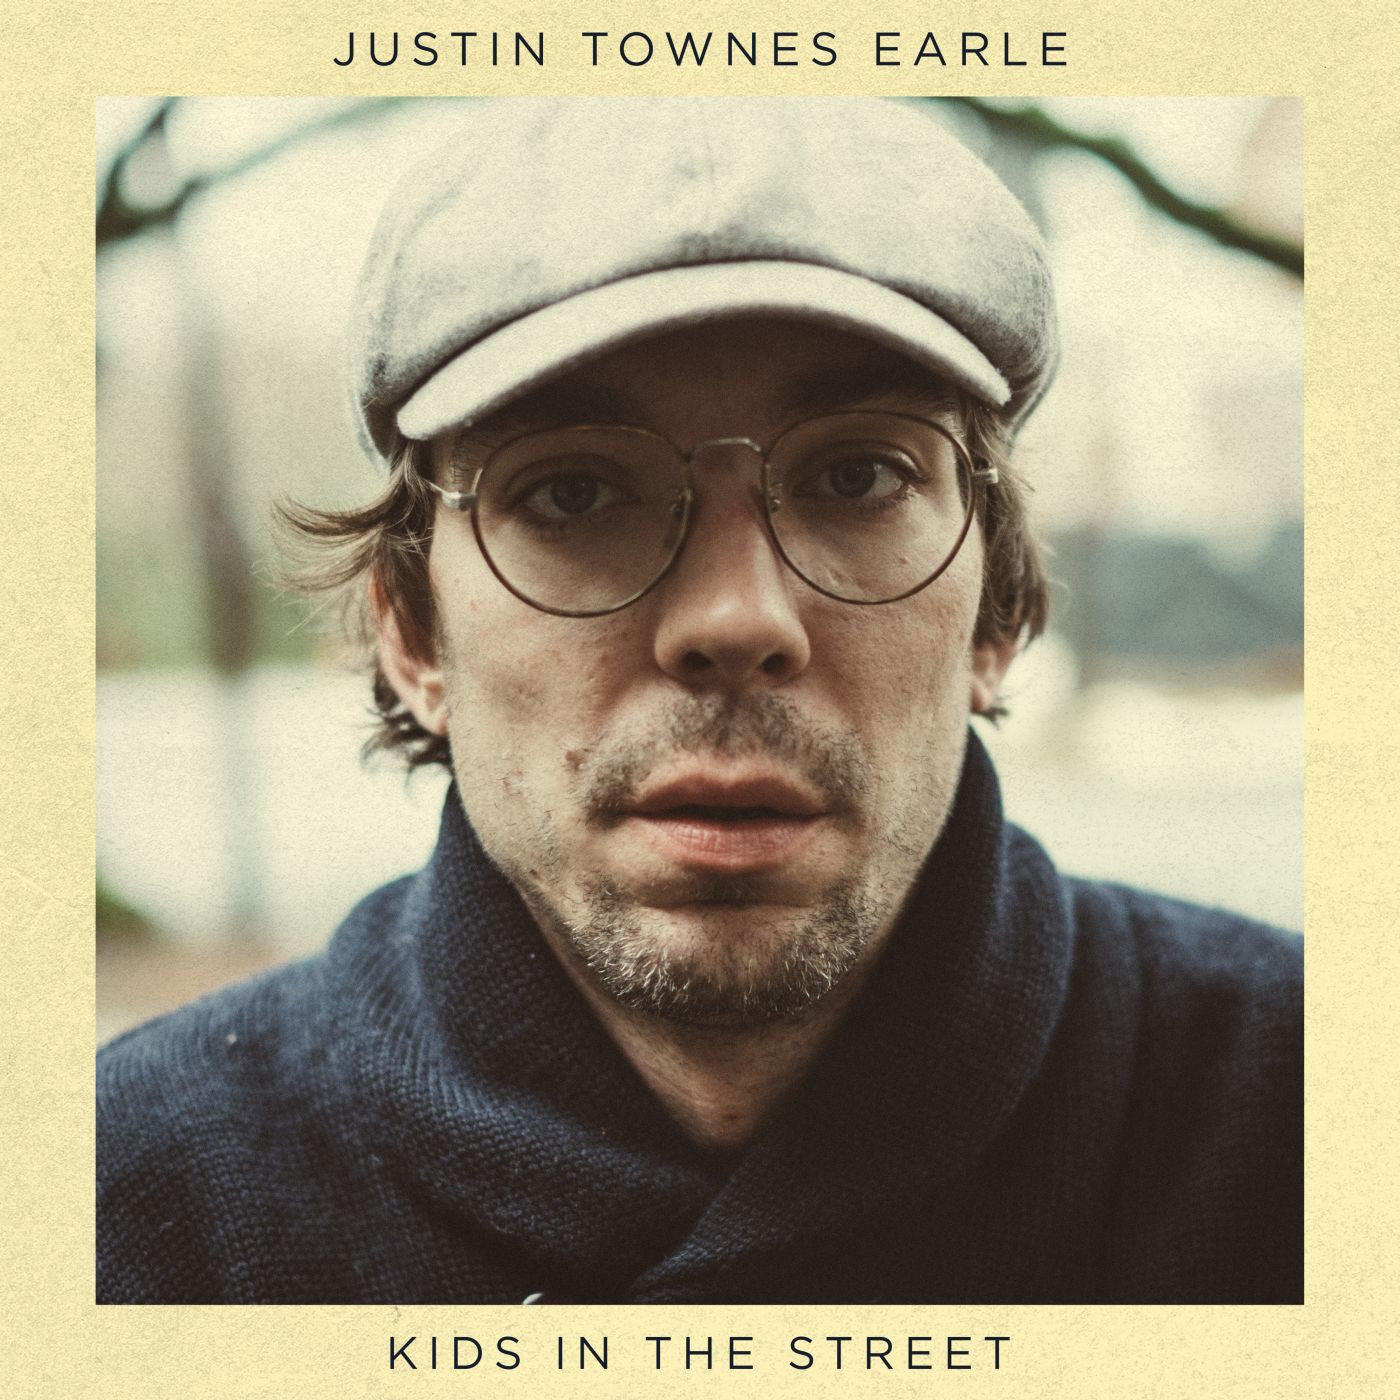 Justin Townes Earle - Kids in the Street (Vinyl LP)